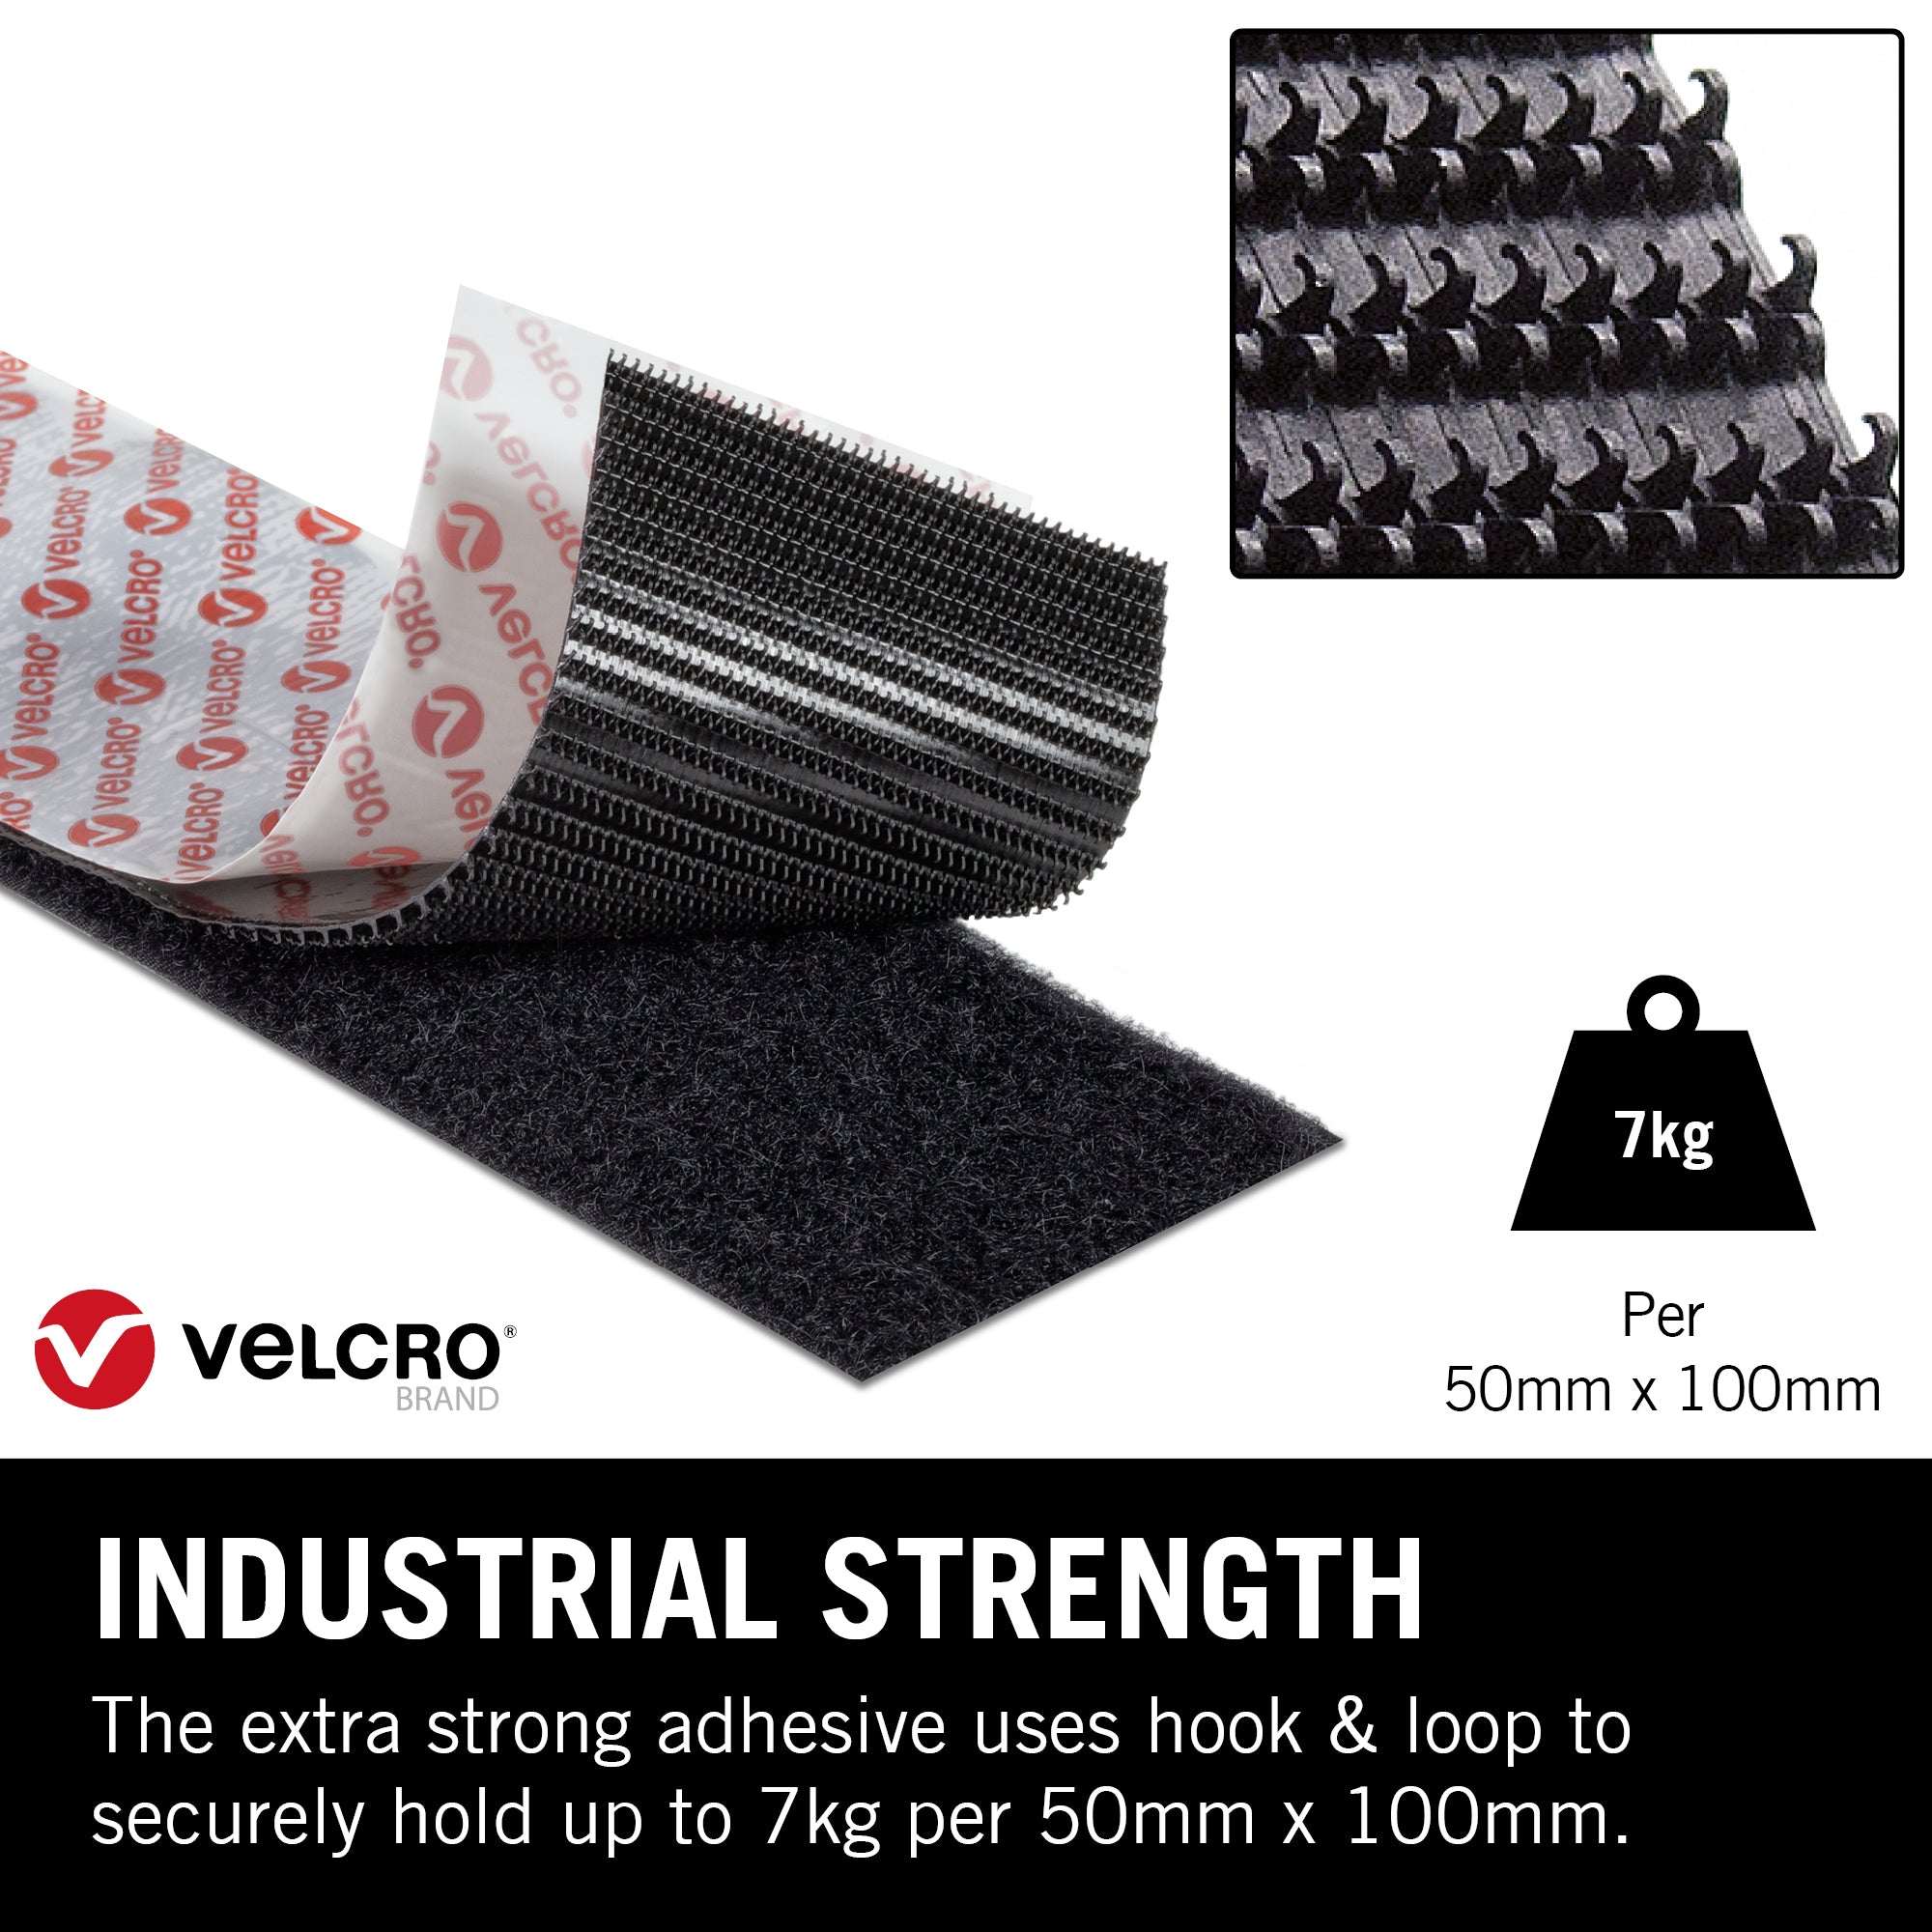 VELCRO 4 in. x 2 in. Industrial Strength Strips in Black (2-Pack